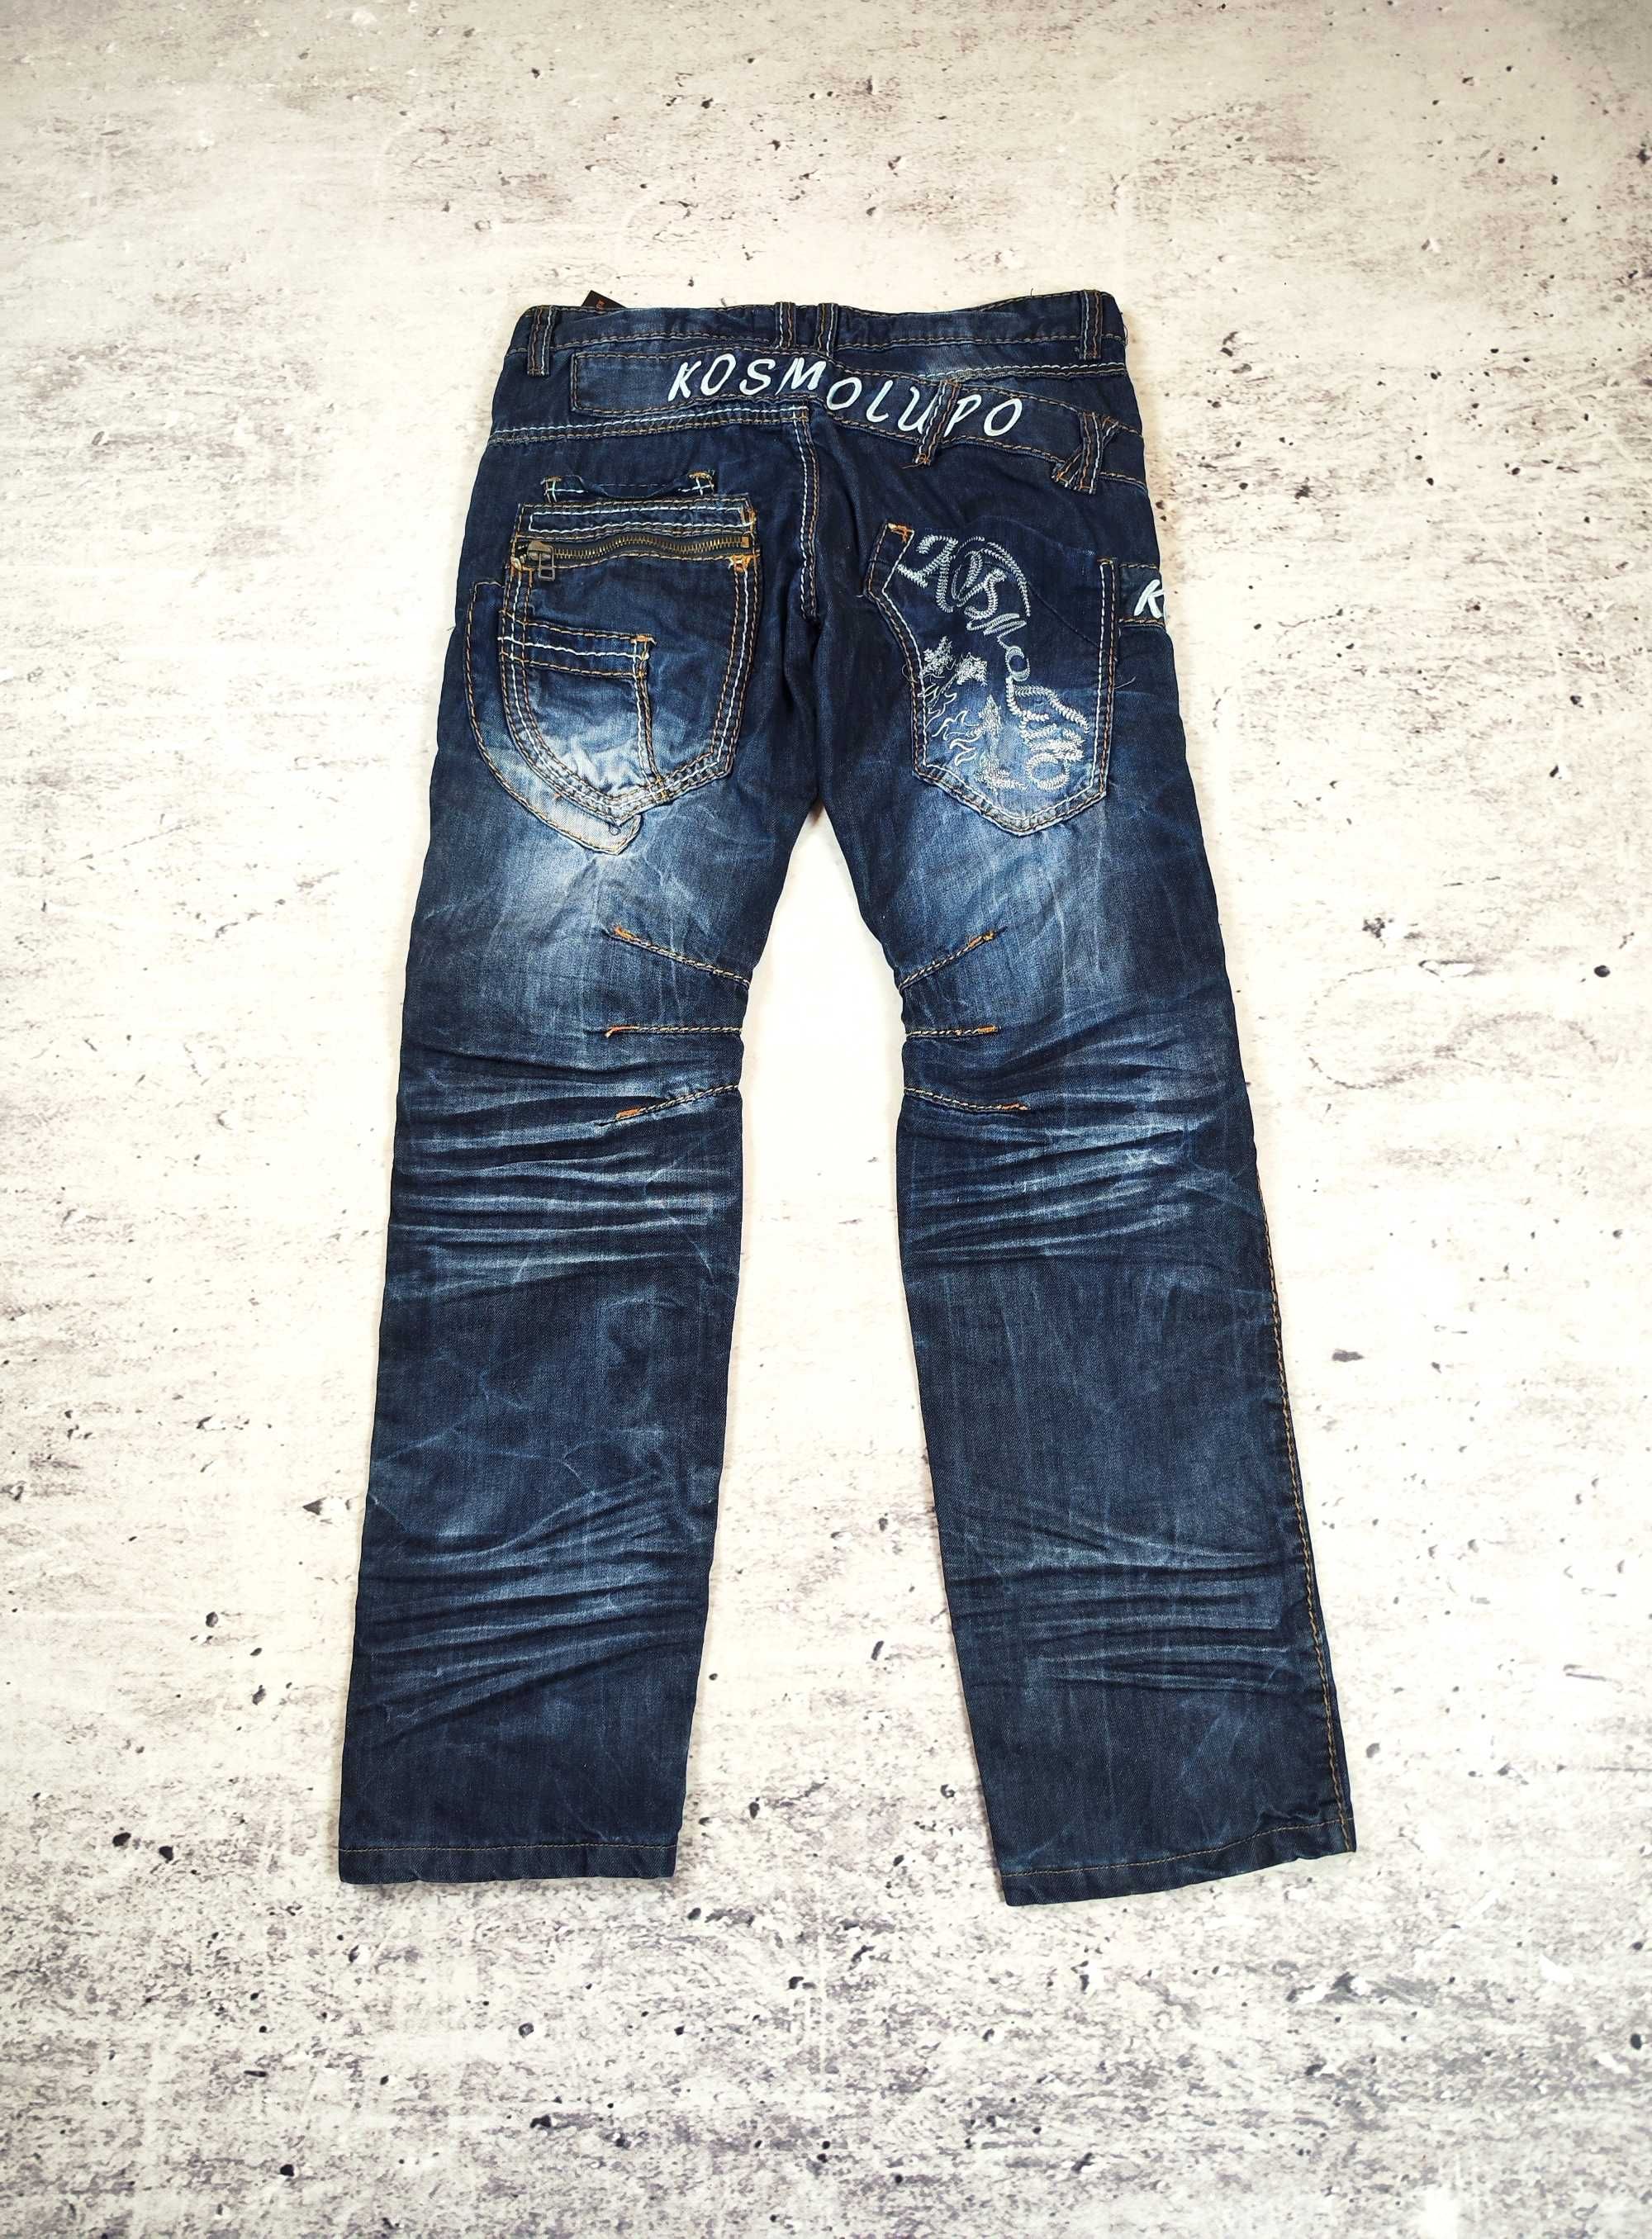 Spodnie Kosmolupo drain opium baggy jeans usa 00s y2k dżinsy r. 34